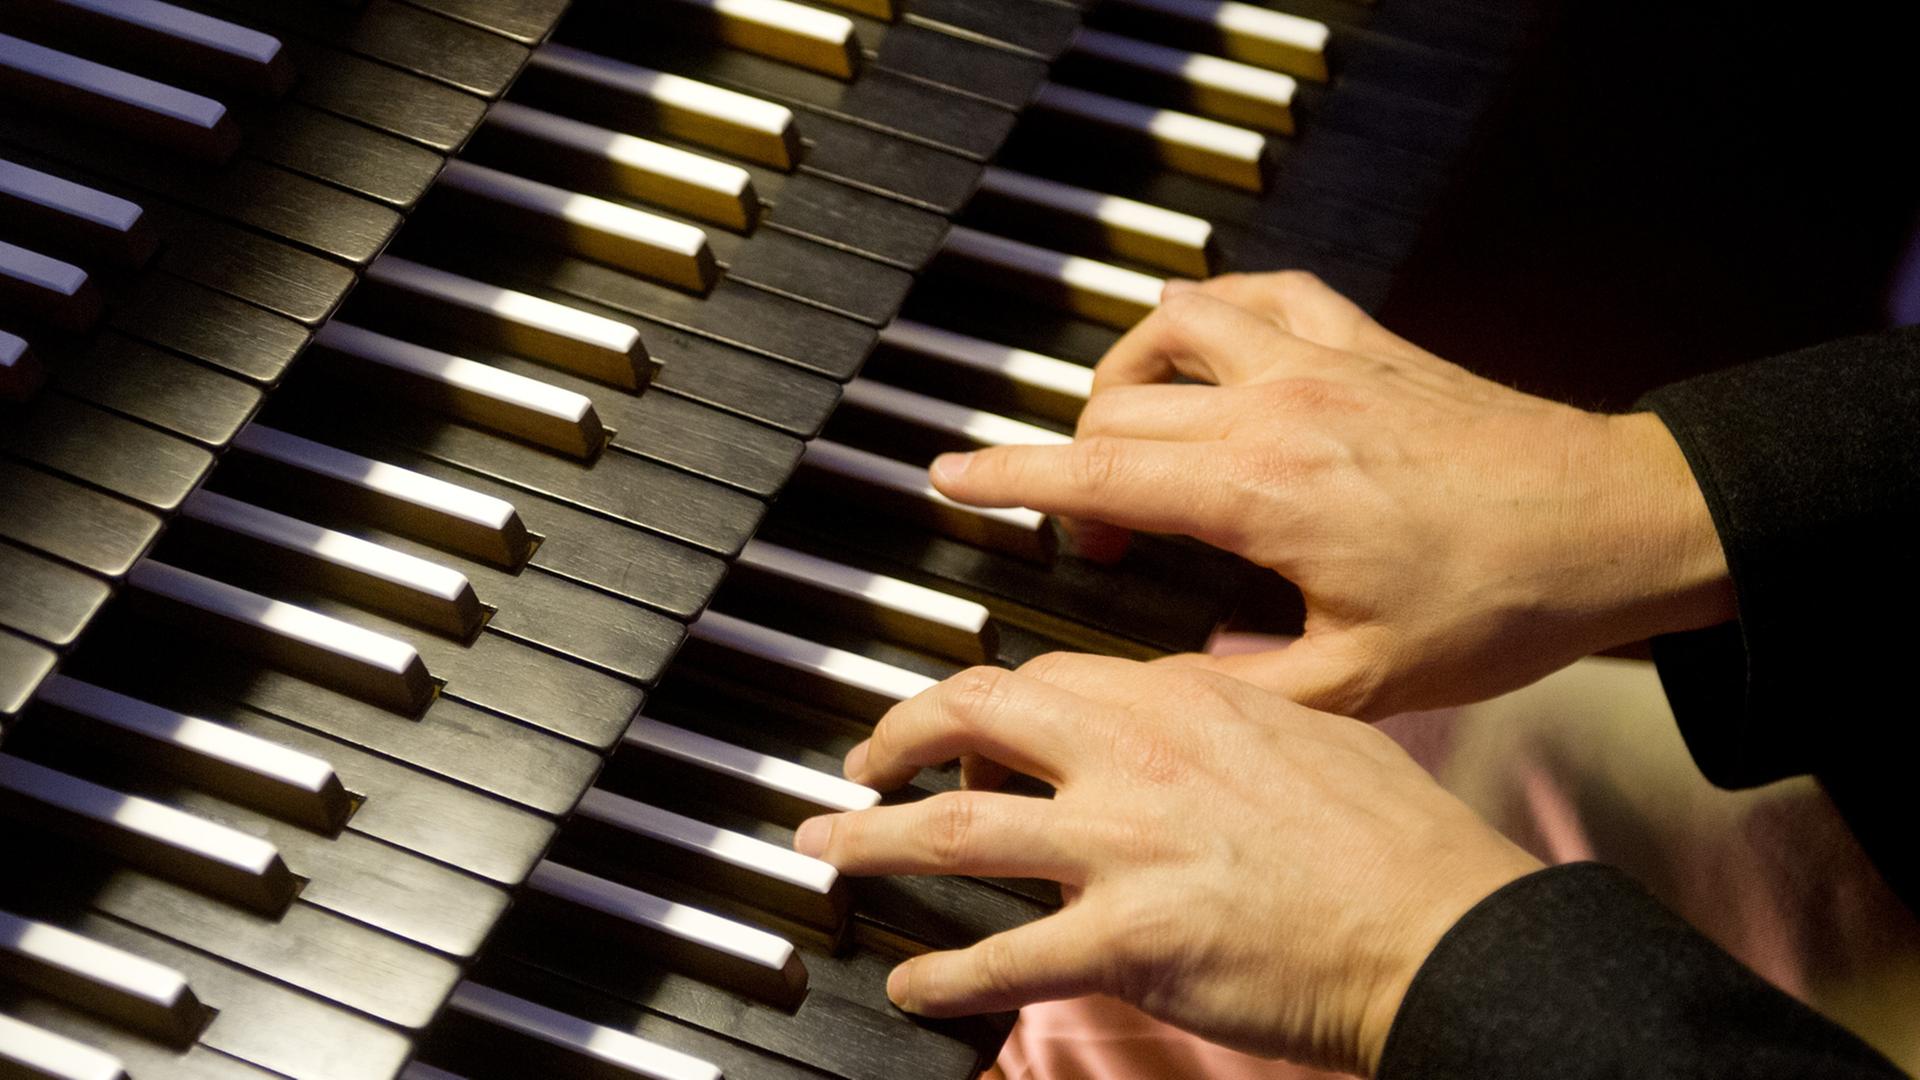 Ein Organist bedient in München in der katholischen Kirche St. Sylvester beim Spielen die Tasten der Orgel.